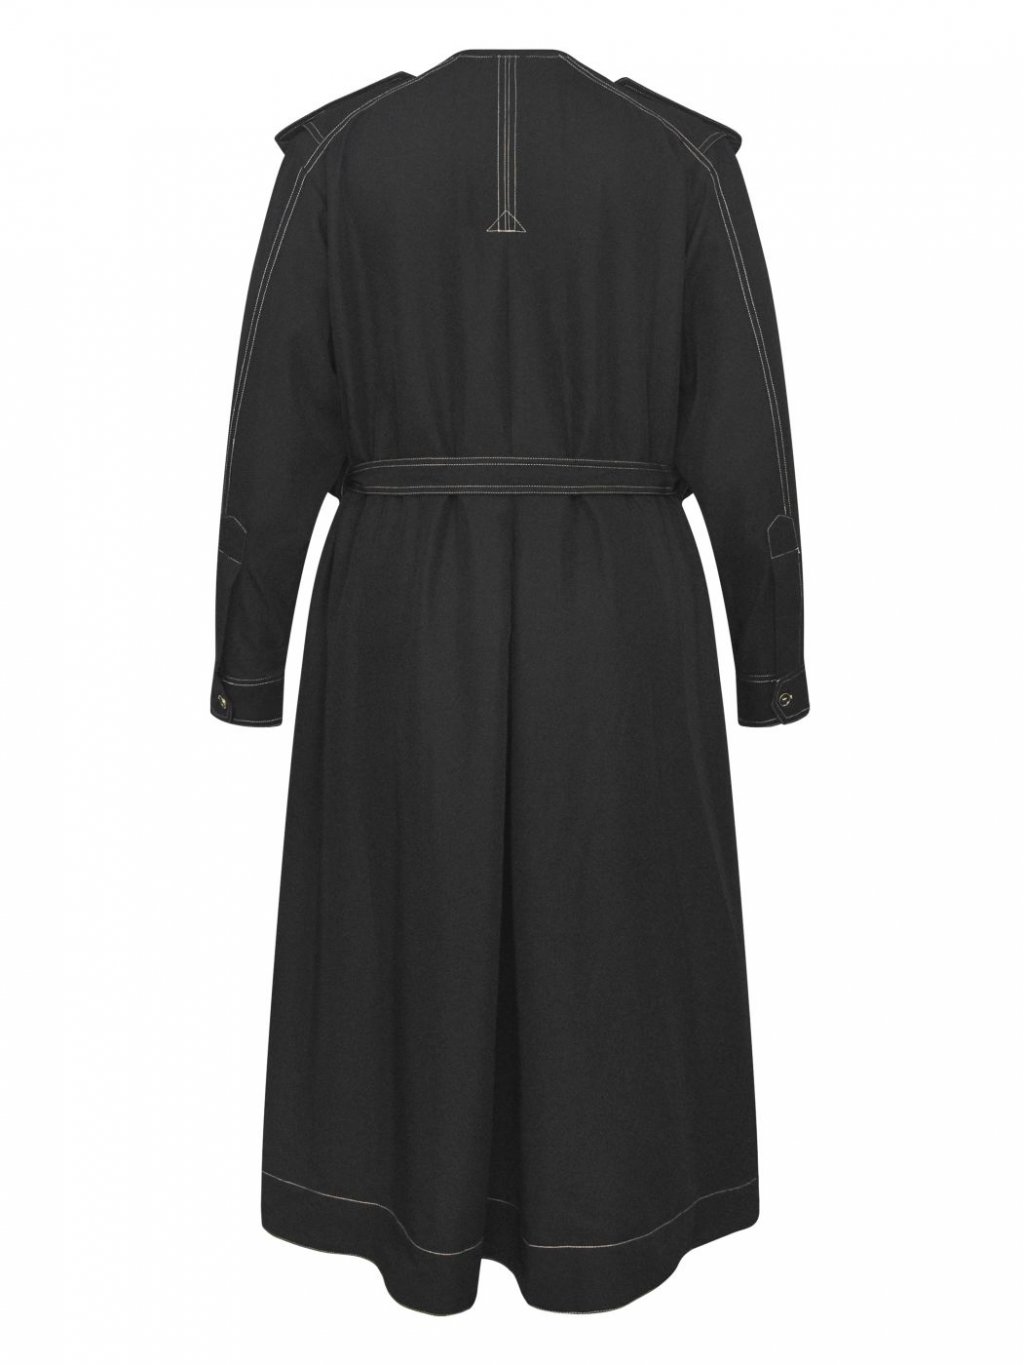 Šaty NU Denmark 7744-23 černé s vypasovanou vestou 